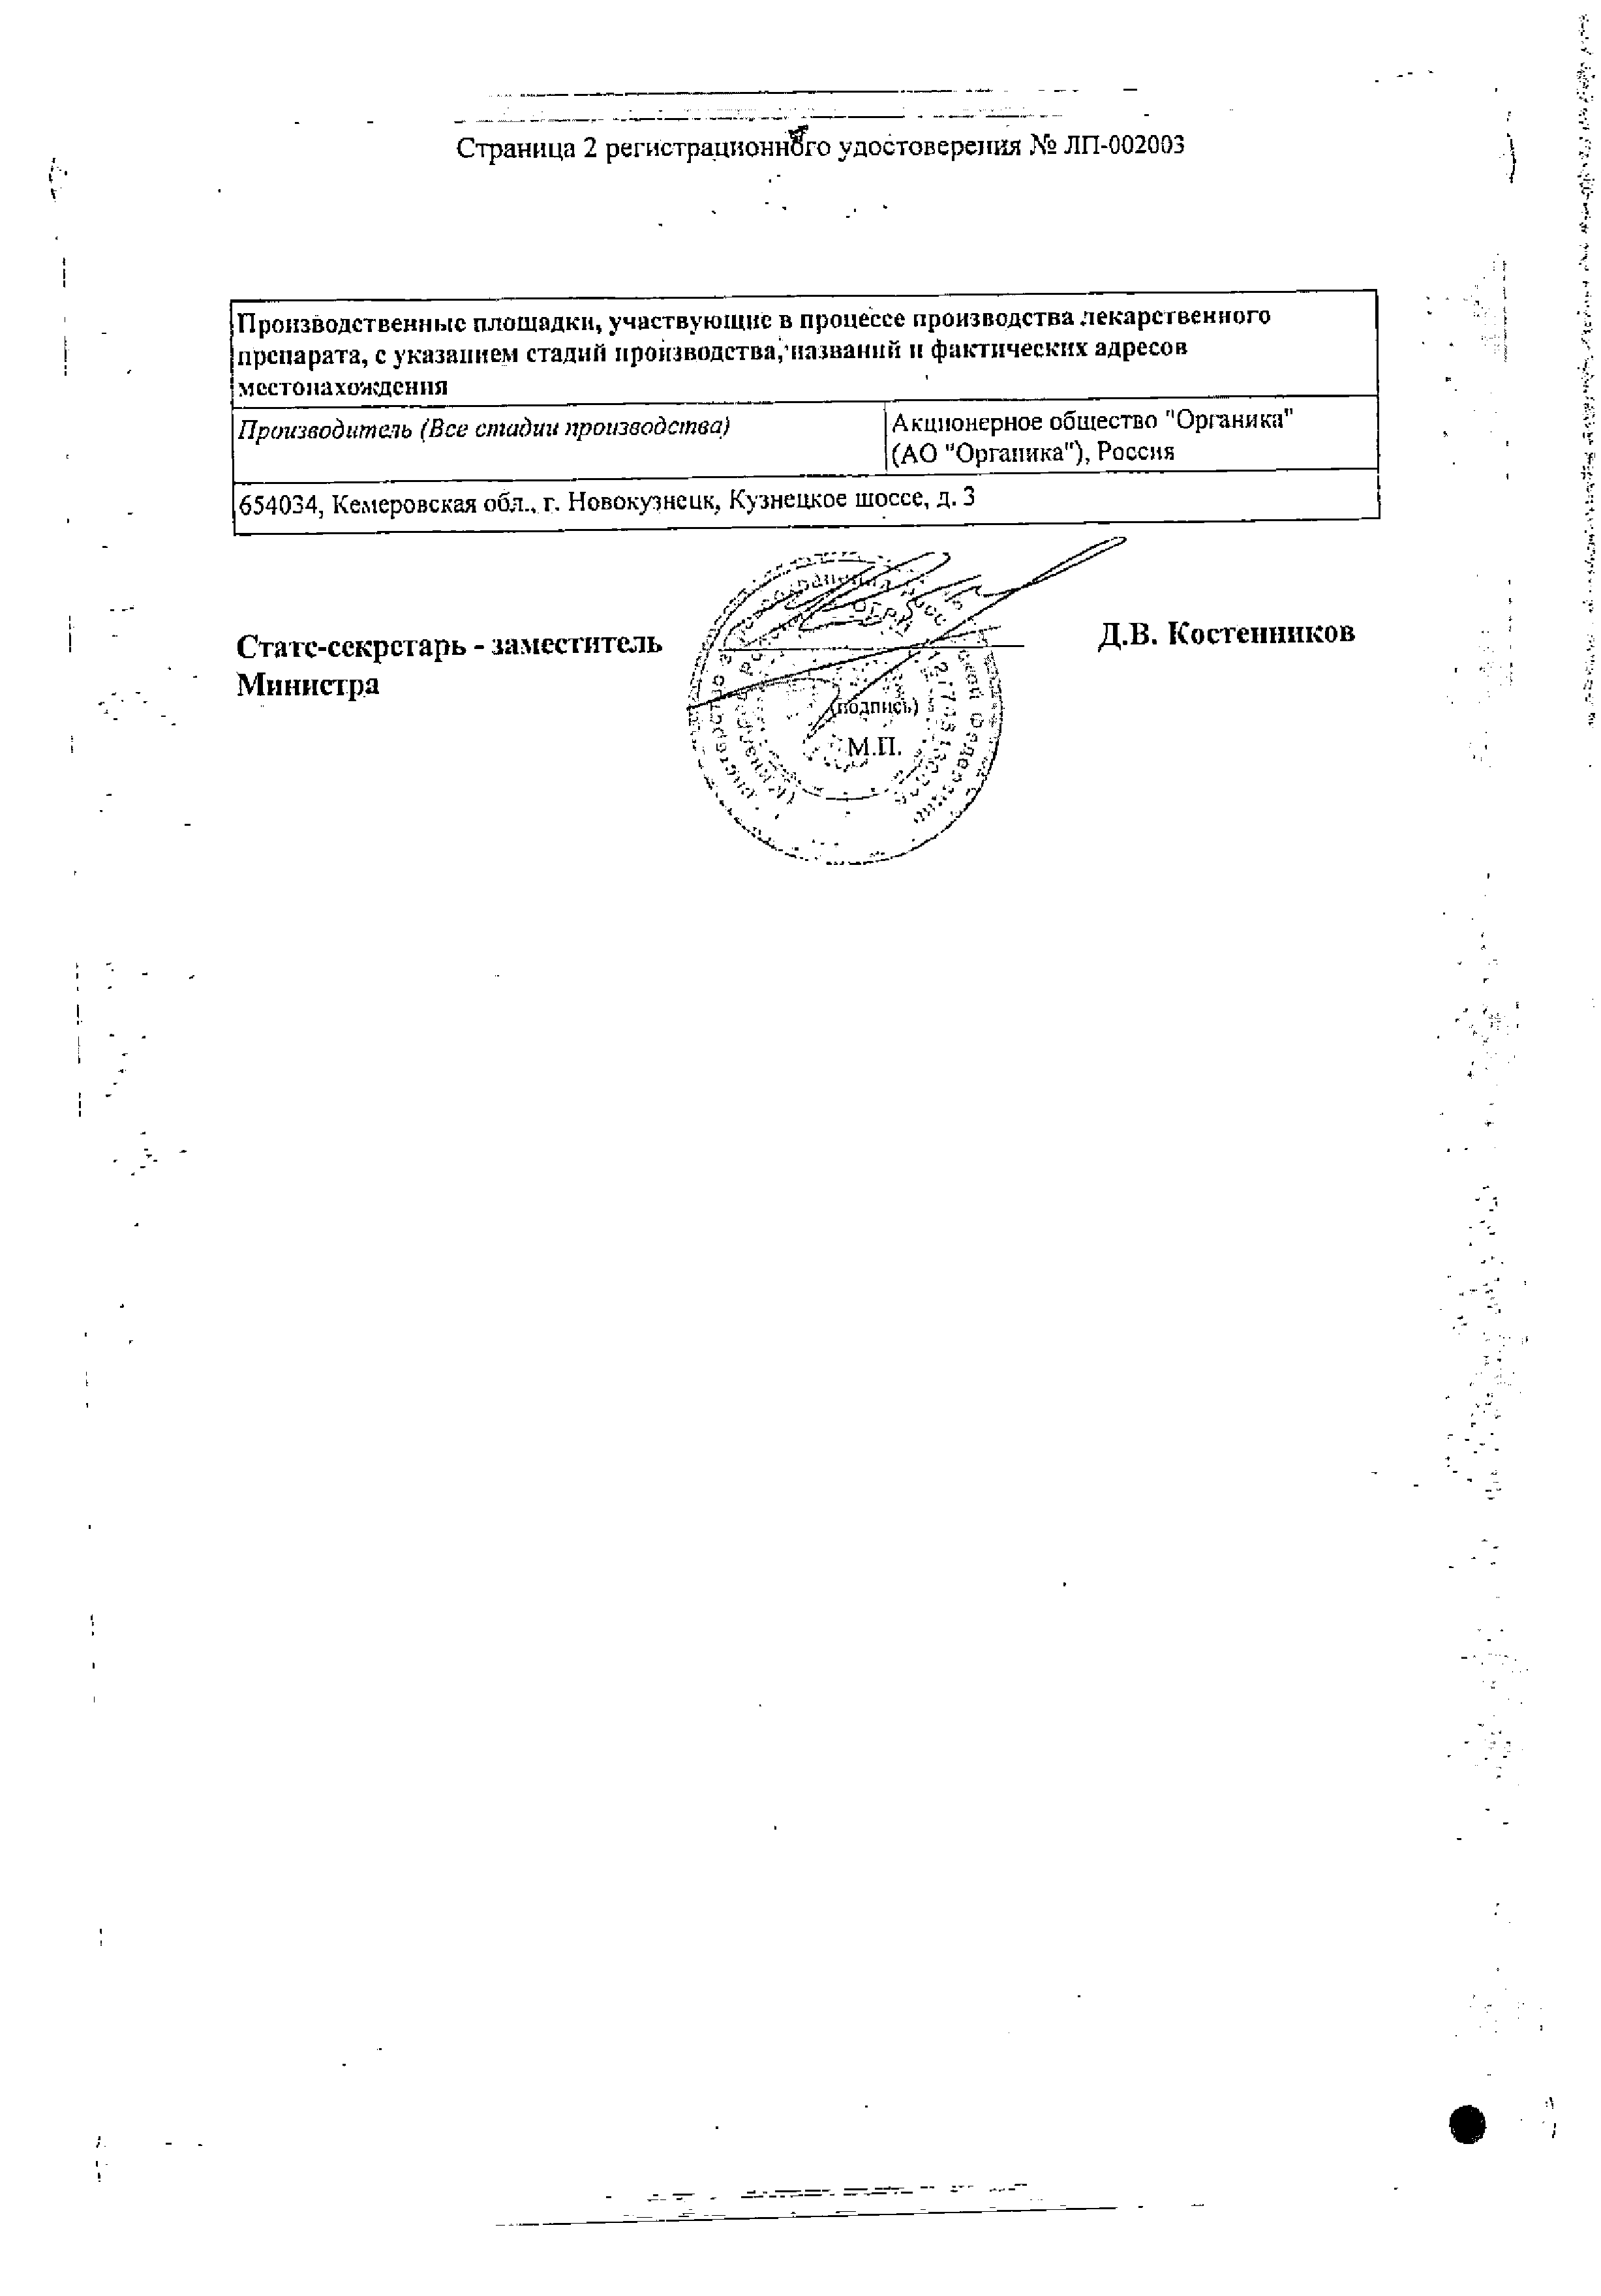 Мельдоний Органика сертификат